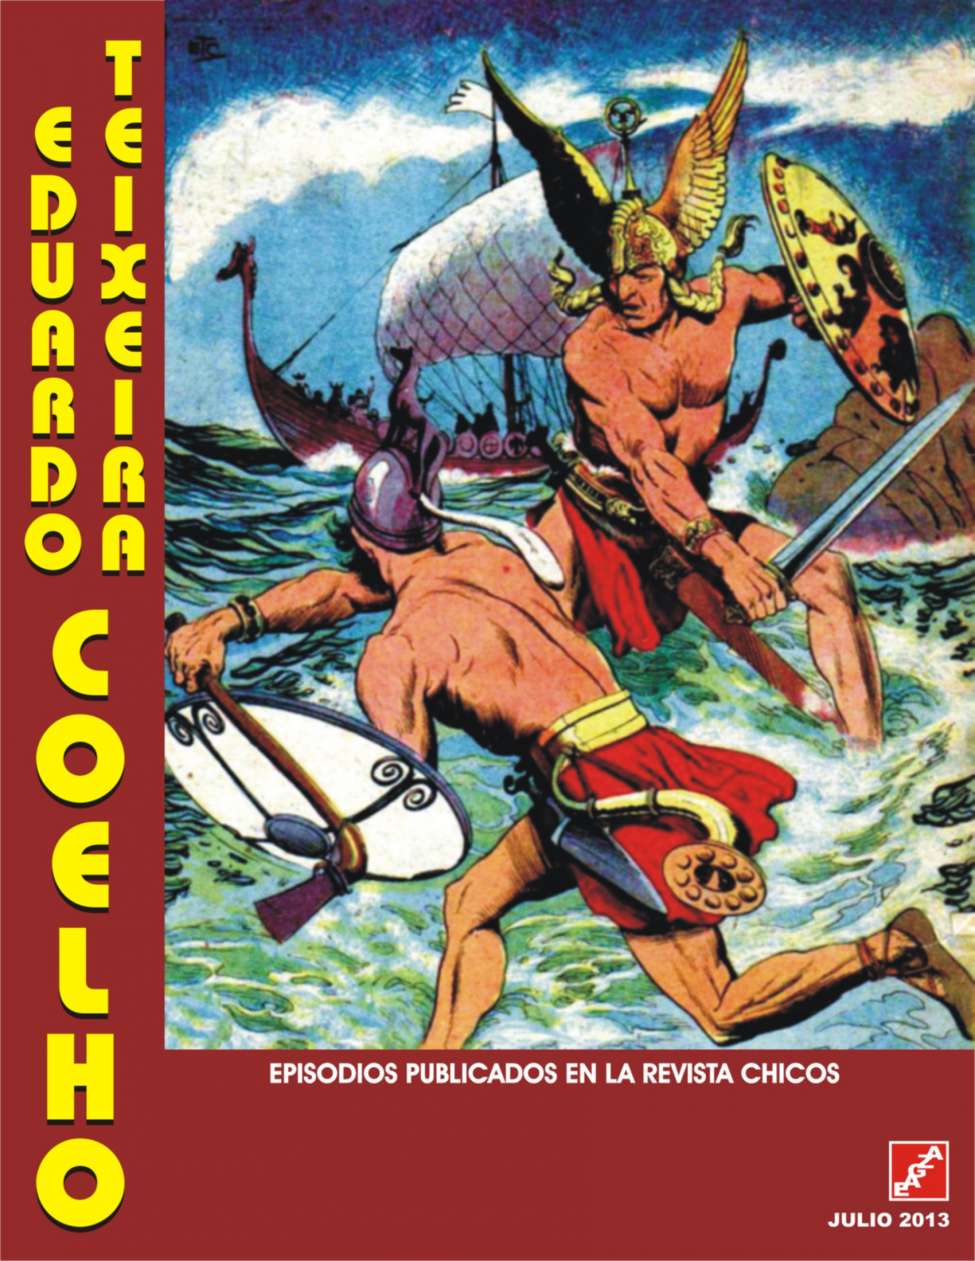 Comic Book Cover For Chicos - Eduardo Teixeira Coelho en revista Chicos